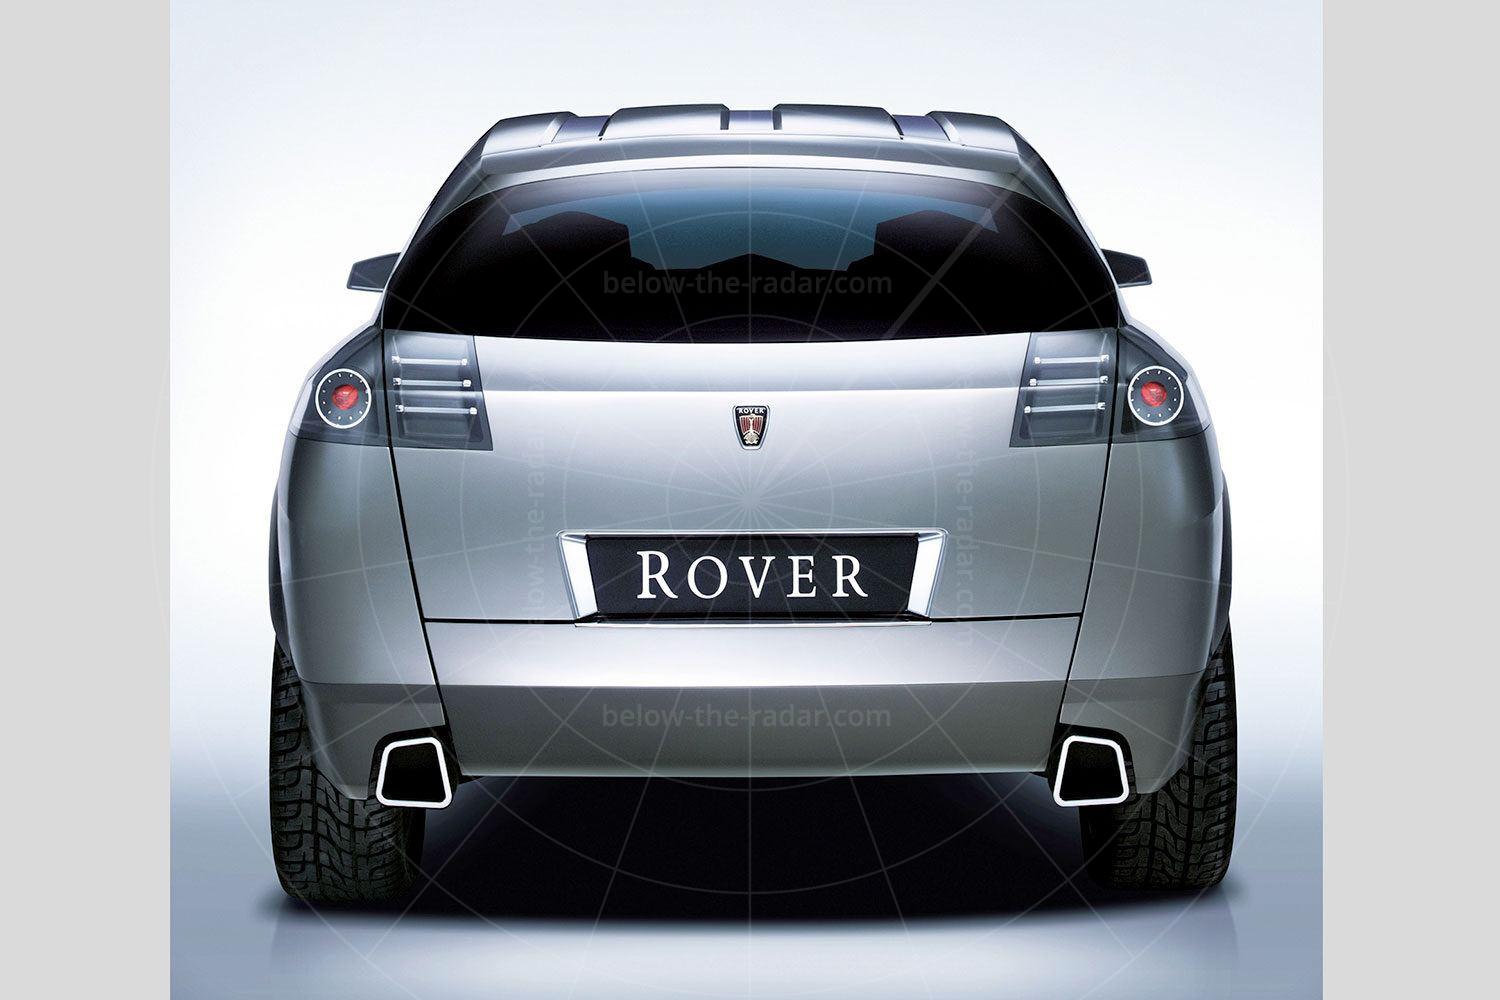 Rover TCV Pic: magiccarpics.co.uk | Rover TCV